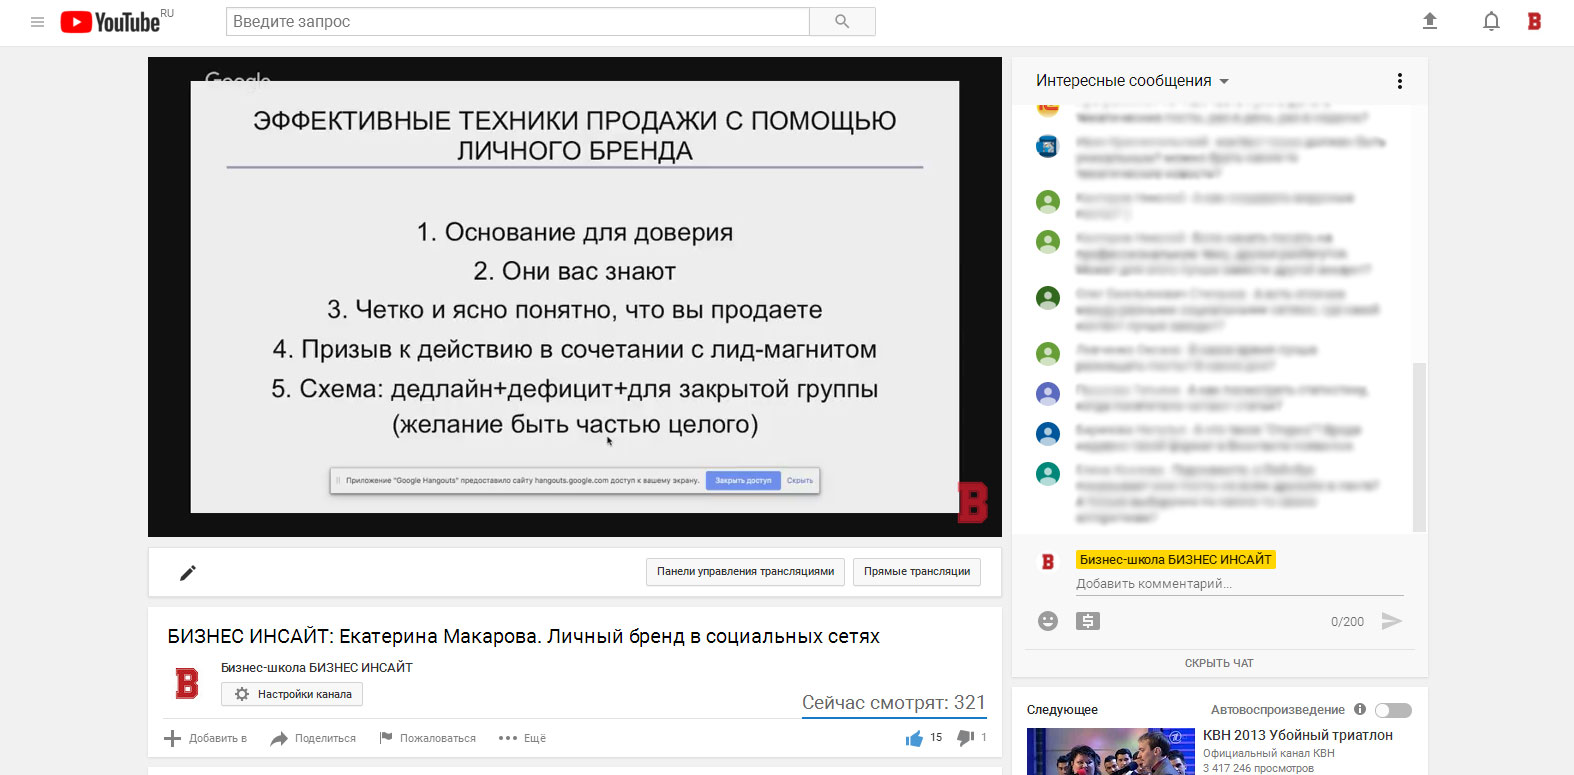 Екатерина Макарова провела открытый вебинар на площадке БИЗНЕС ИНСАЙТ